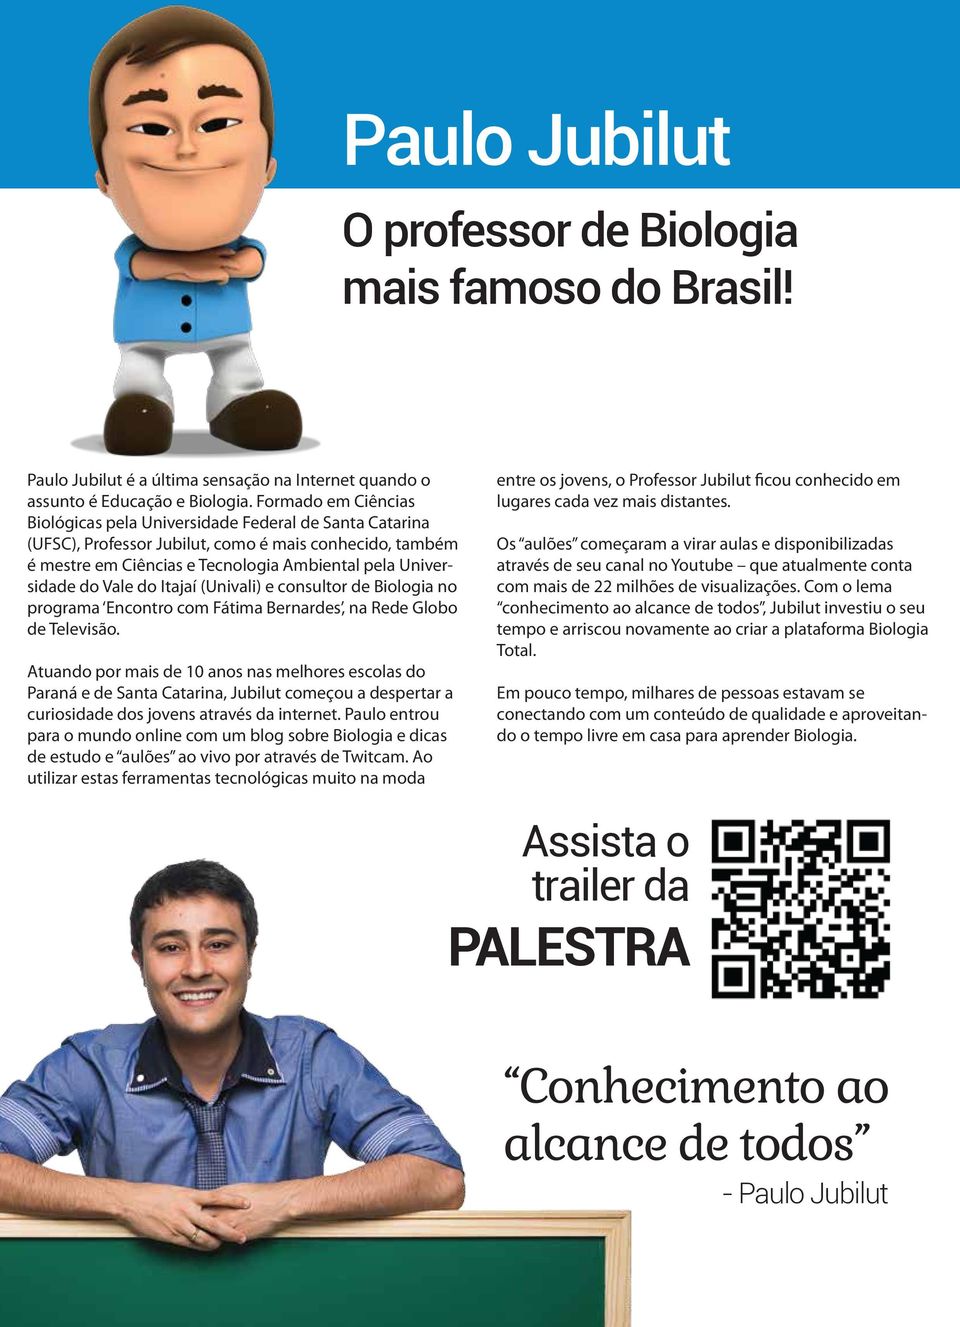 Vale do Itajaí (Univali) e consultor de Biologia no programa Encontro com Fátima Bernardes, na Rede Globo de Televisão.